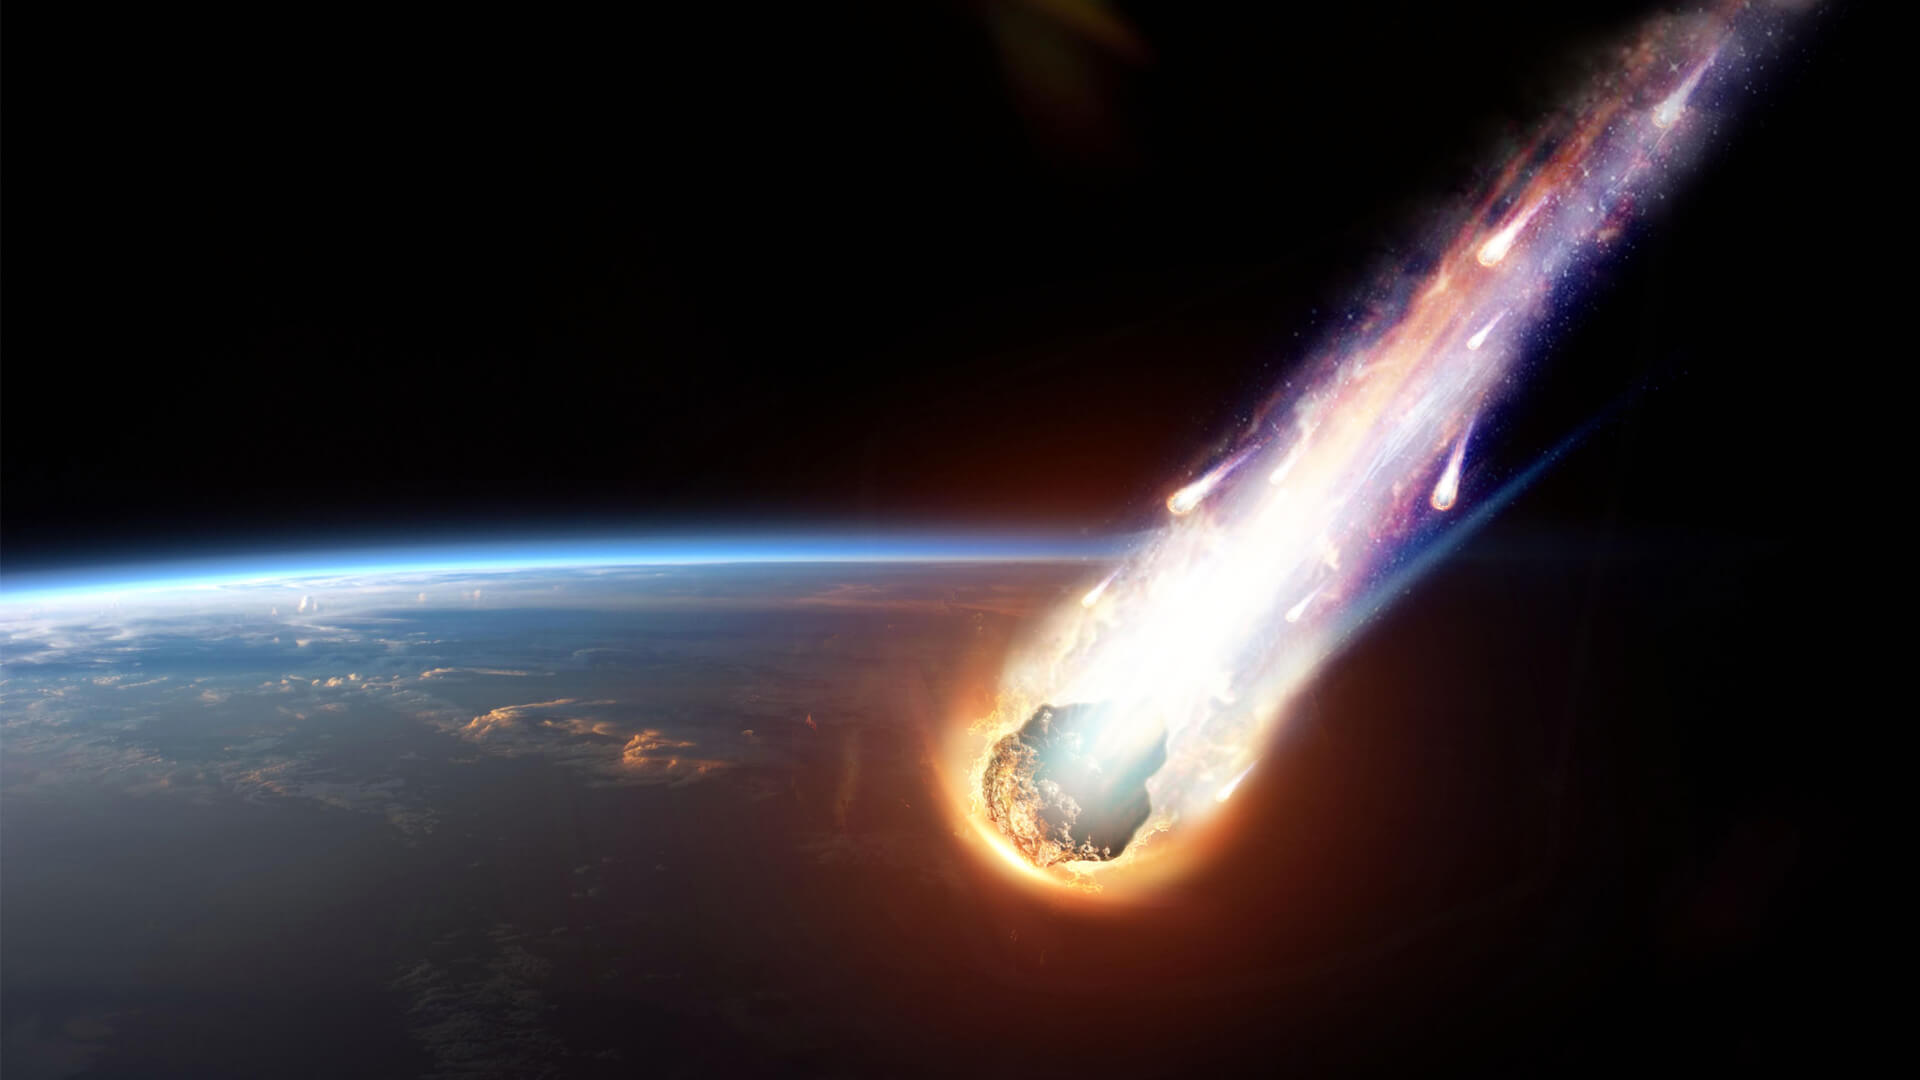 Kann gefallene Meteorit einen Brand verursachen?